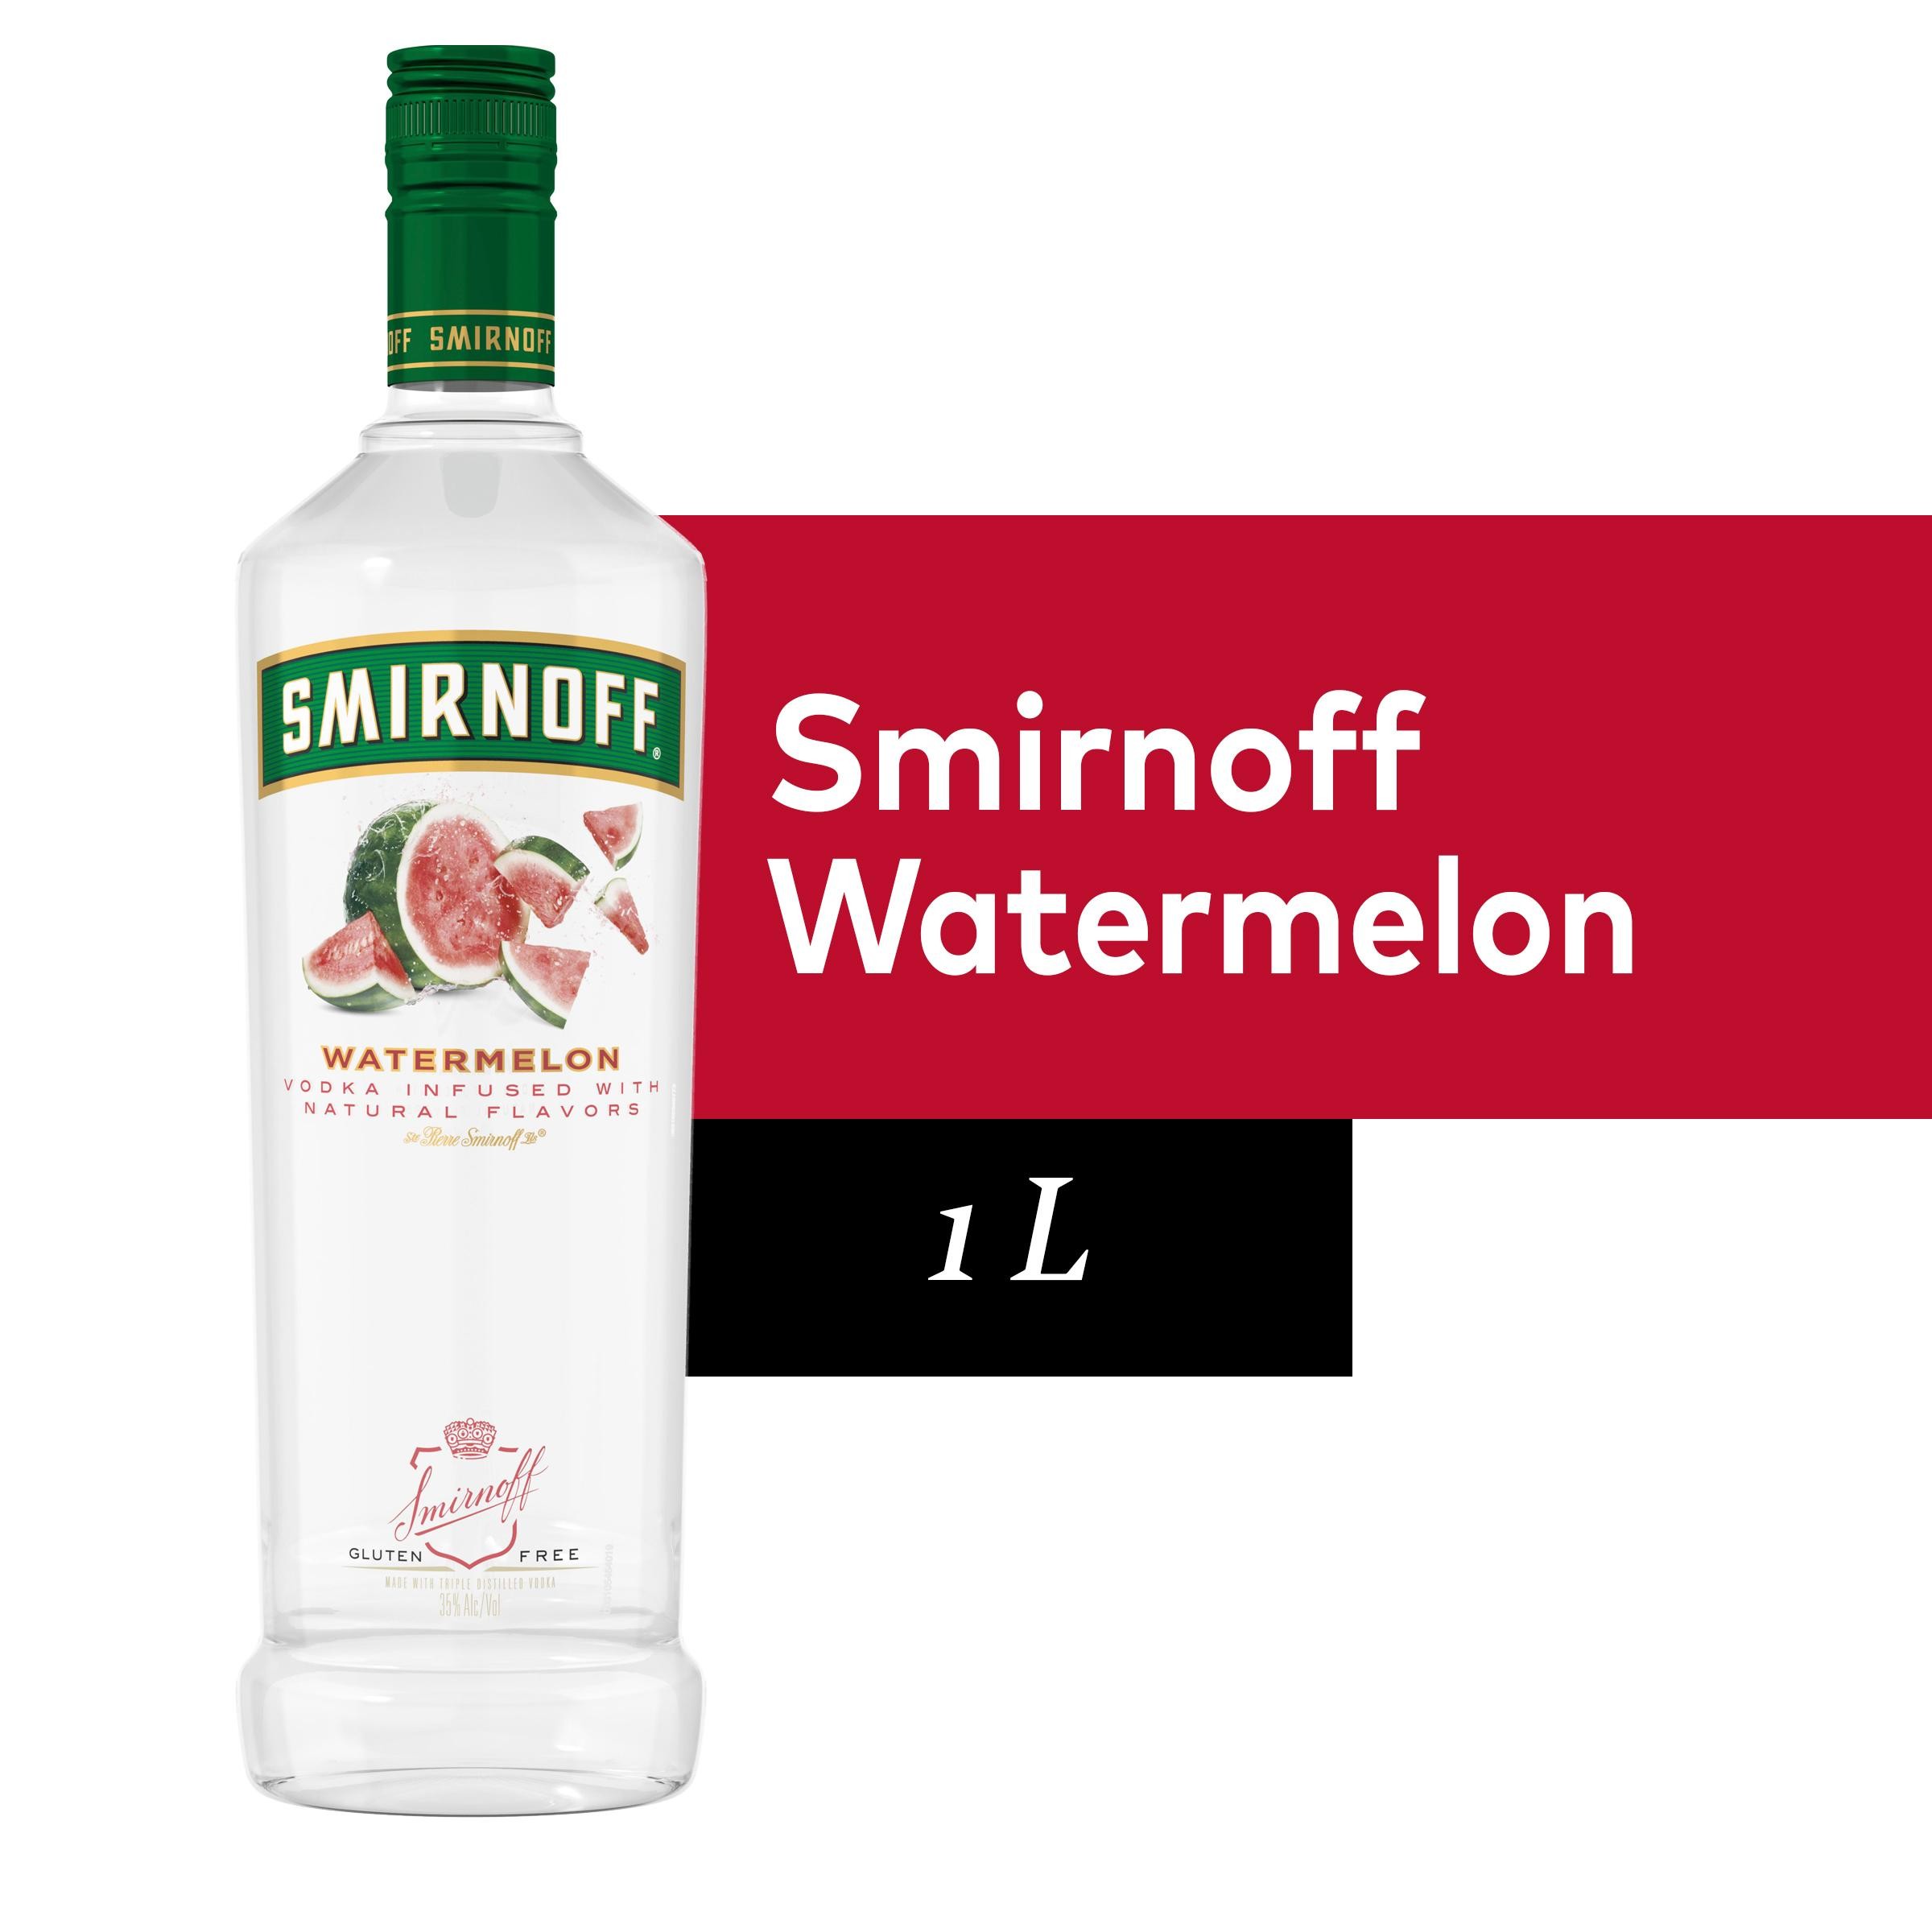 Smirnoff Watermelon Flavored Vodka - 1L Bottle